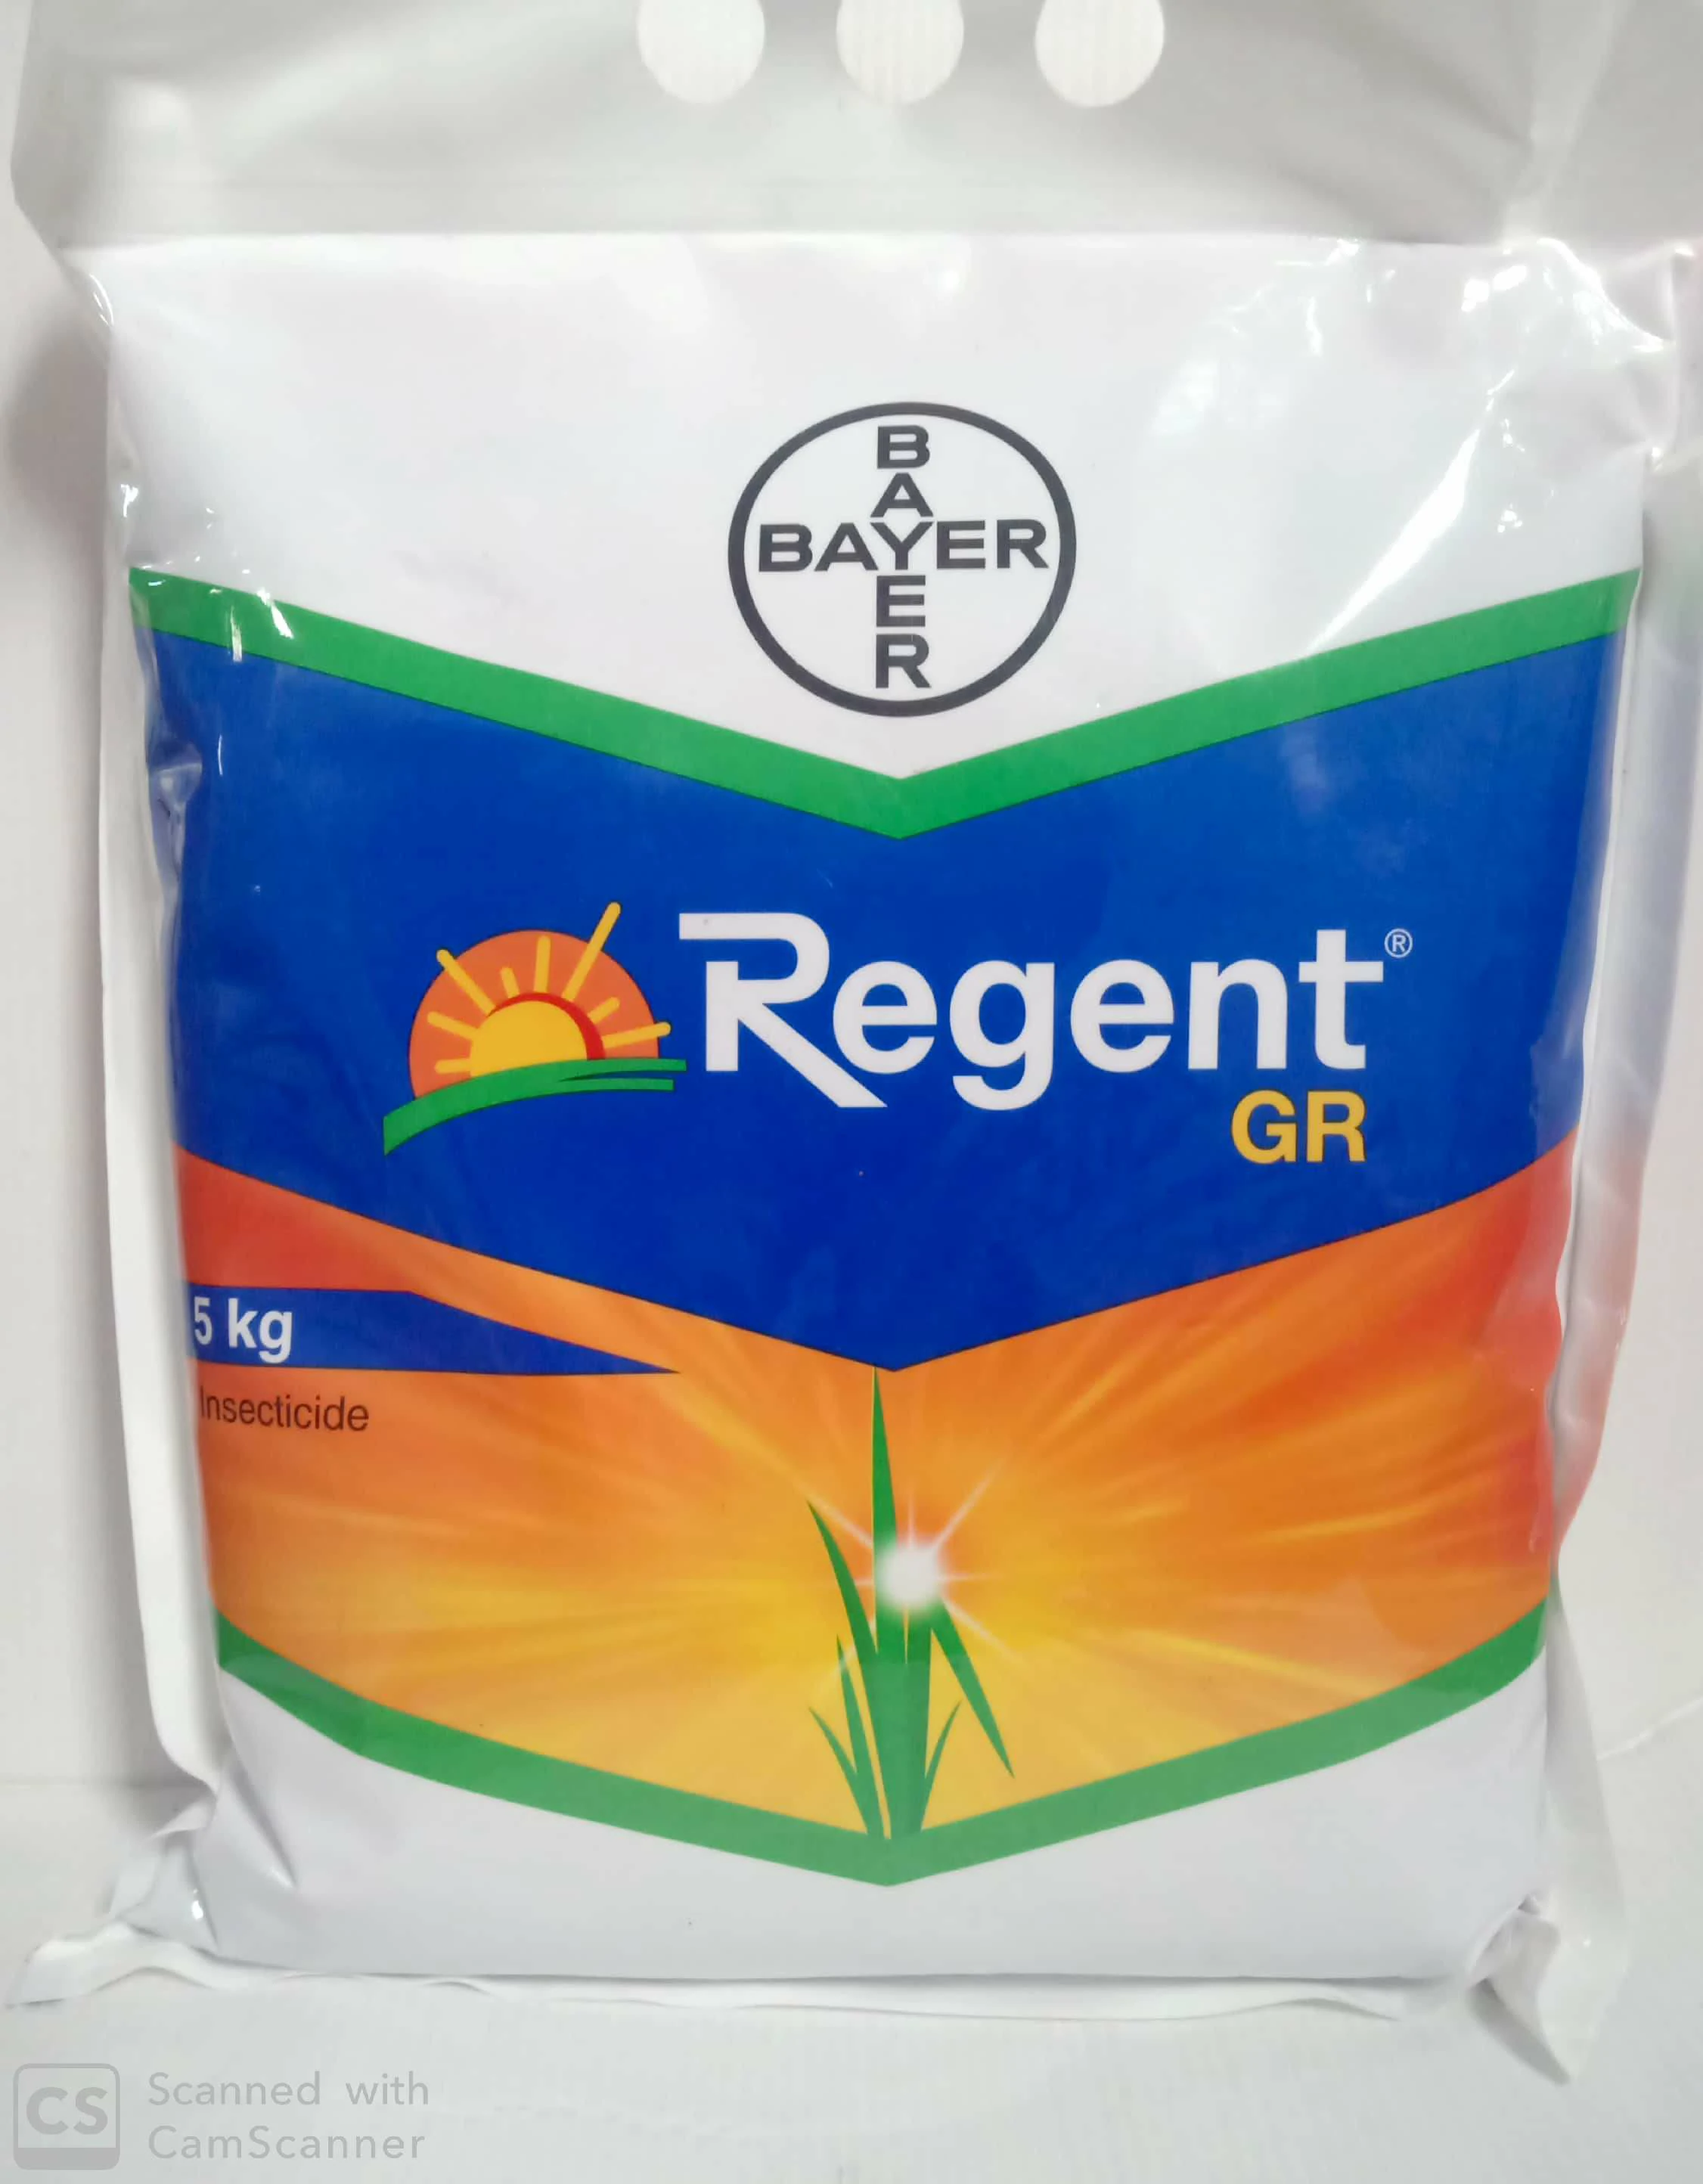 Regent GR Bayer